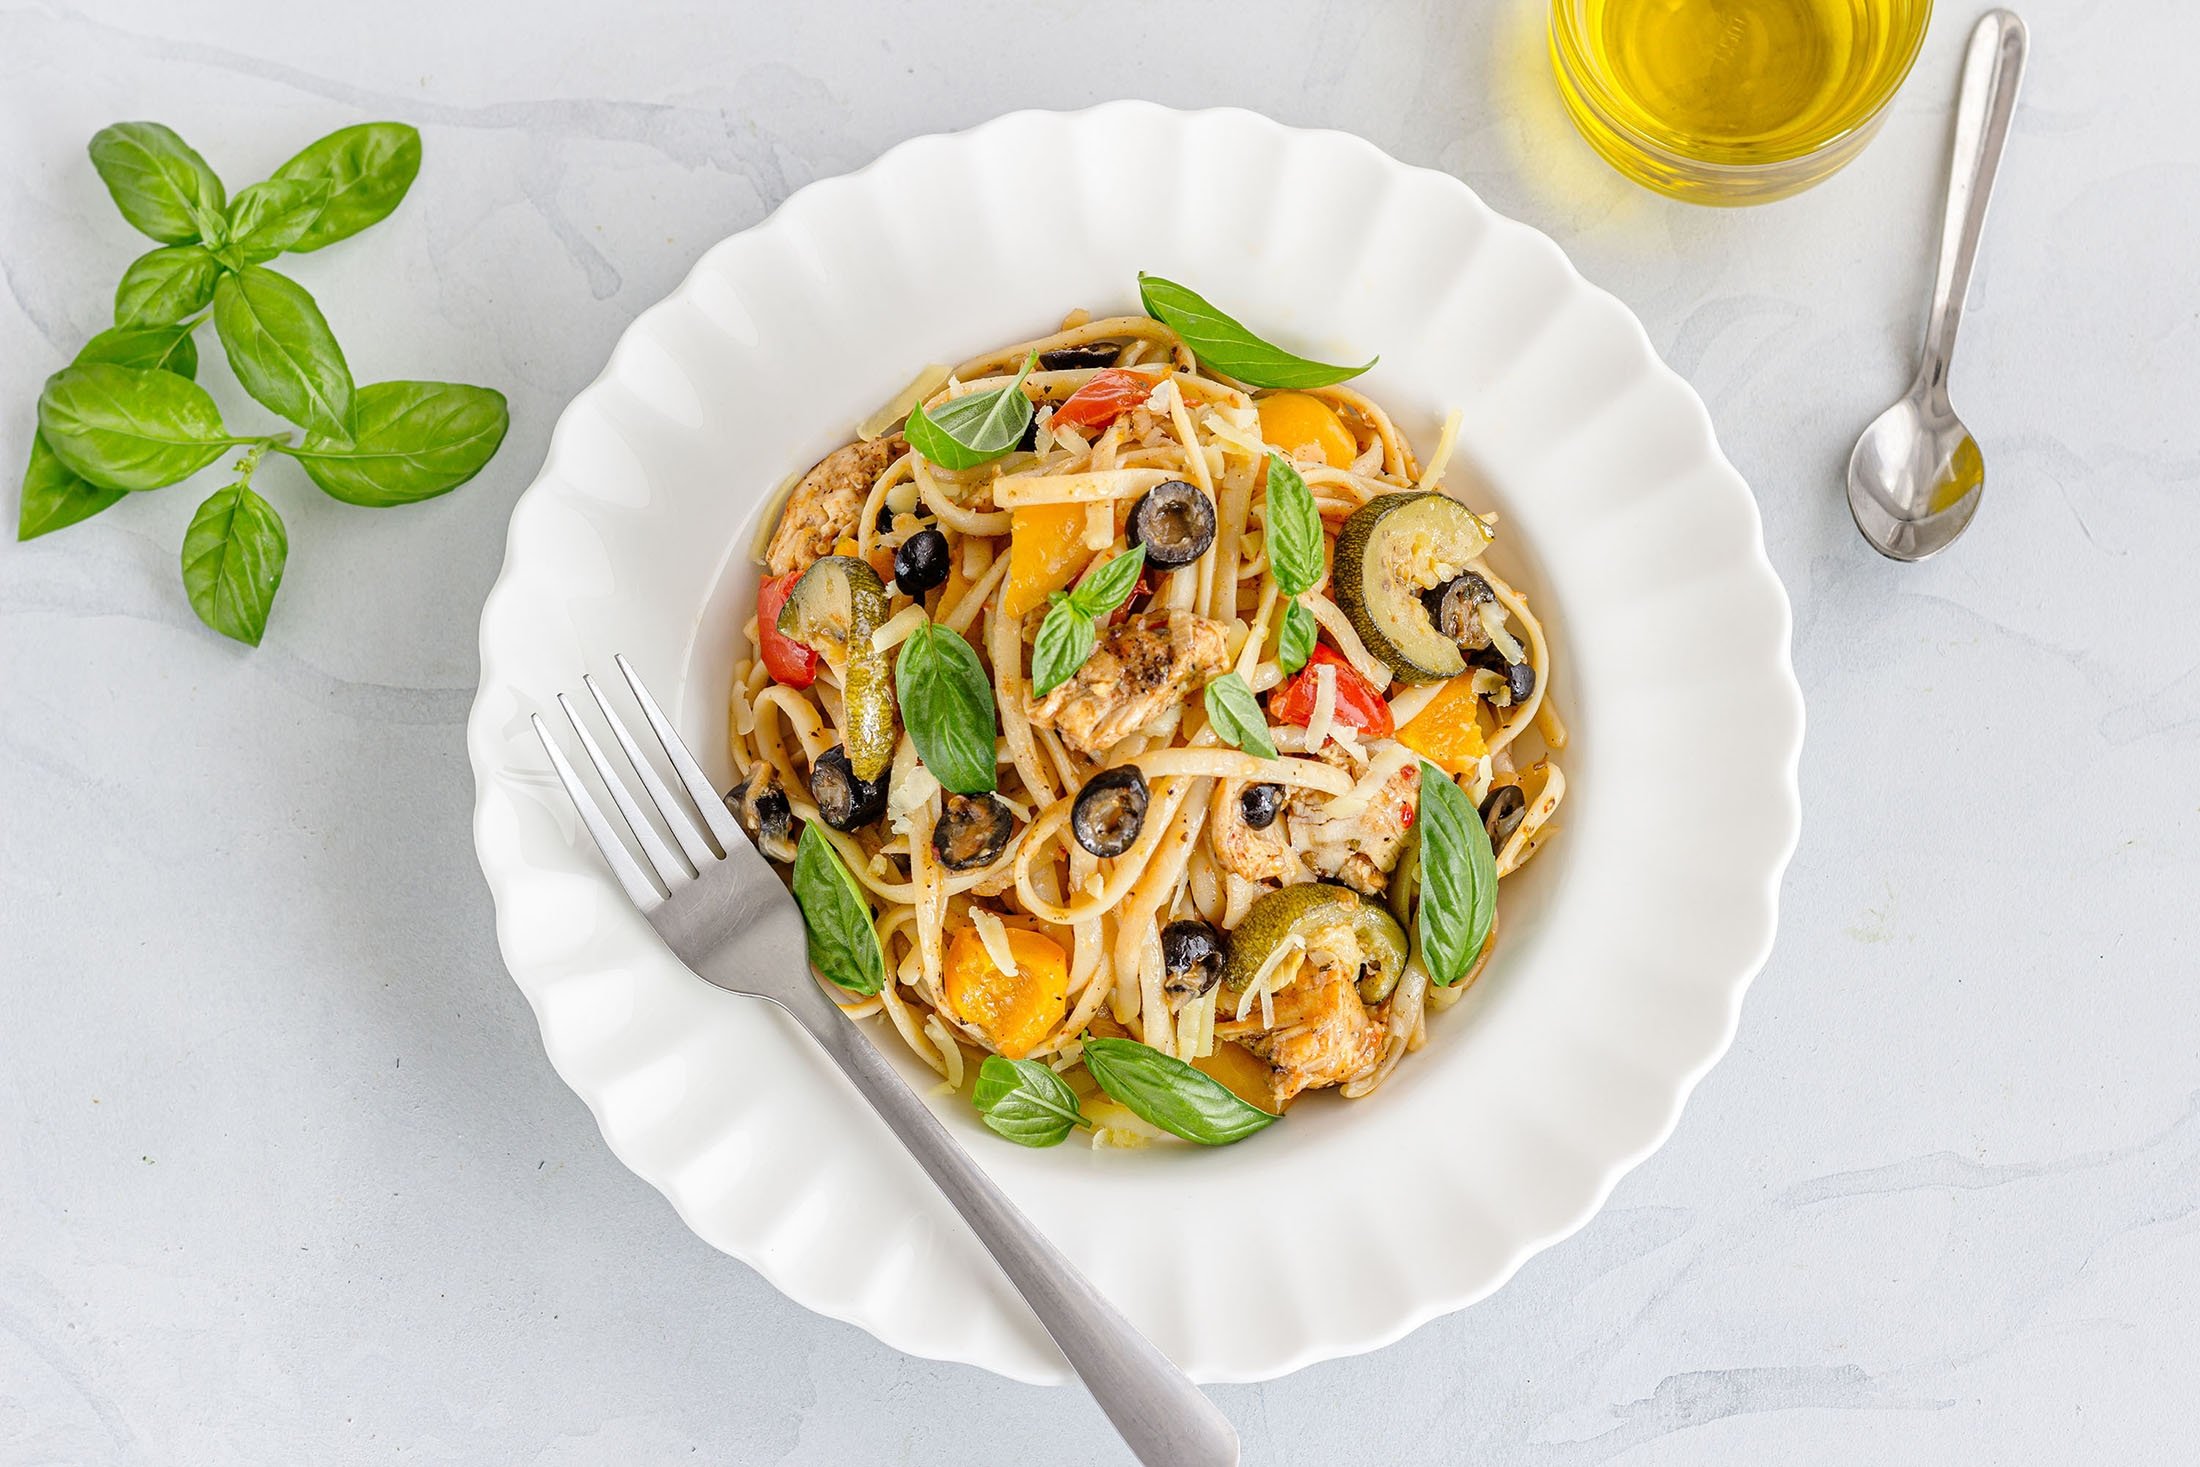 Buang bersama beberapa sisa ayam dan sayuran untuk solusi makan malam cepat.  (Foto Shutterstock)